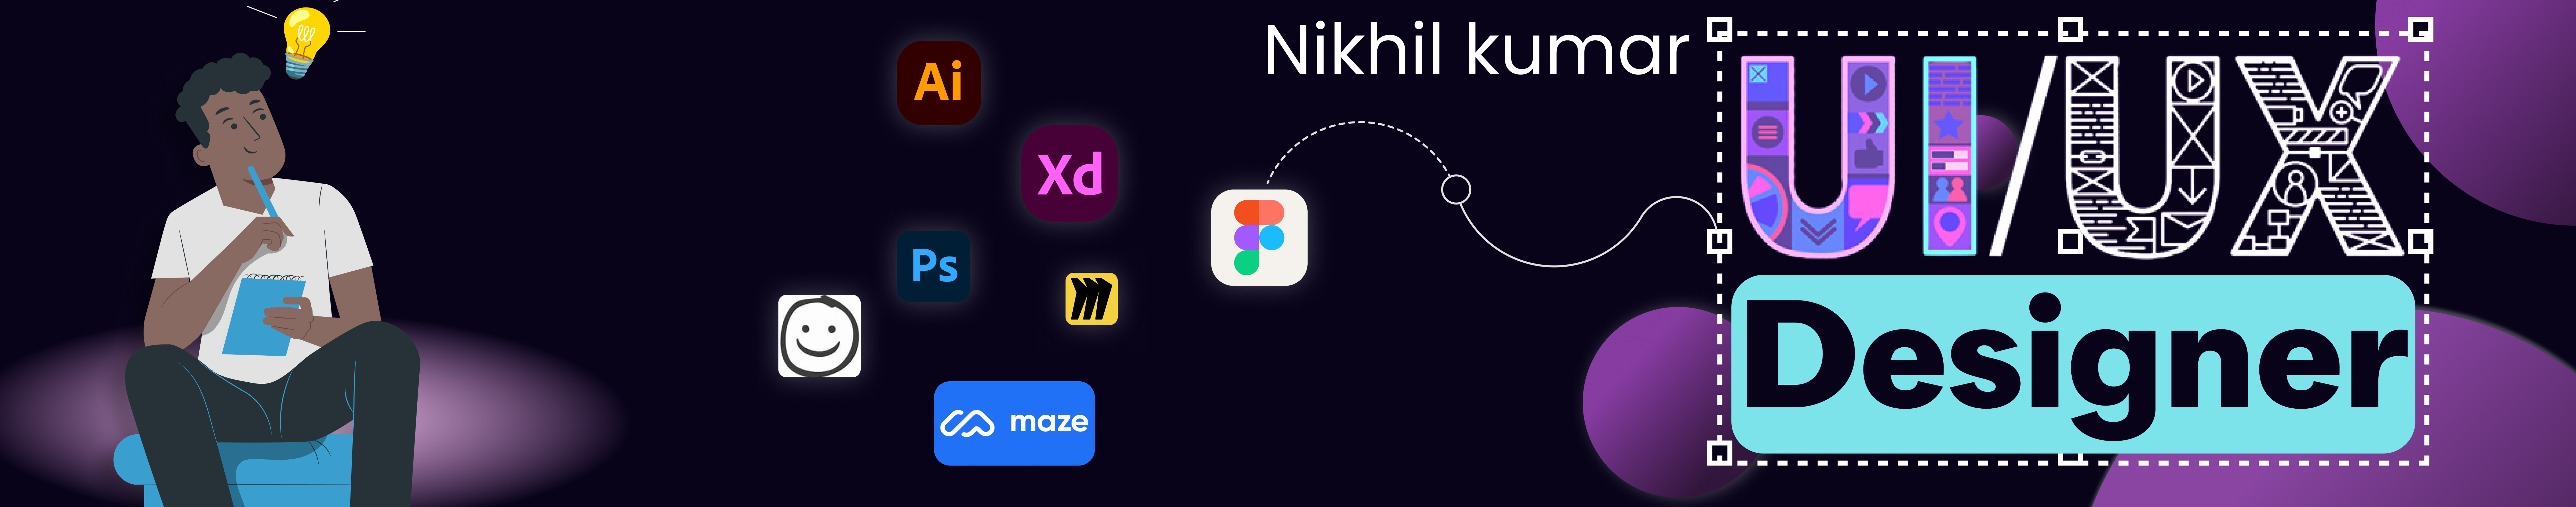 Bannière de profil de nikhil kumar